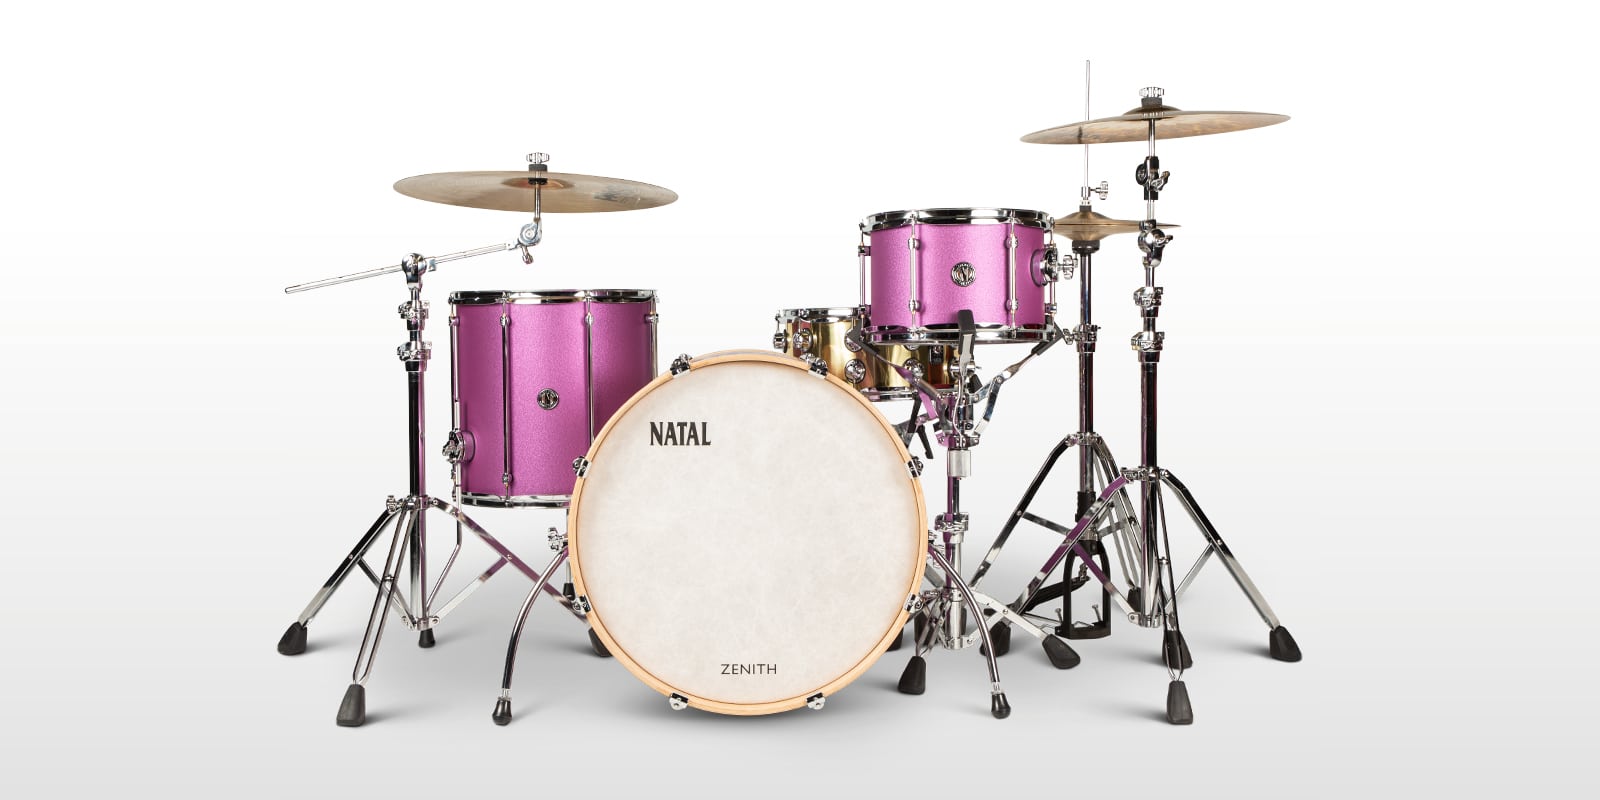 מערכת תופים Marshall Natal Zenith Pink Frost kit 22